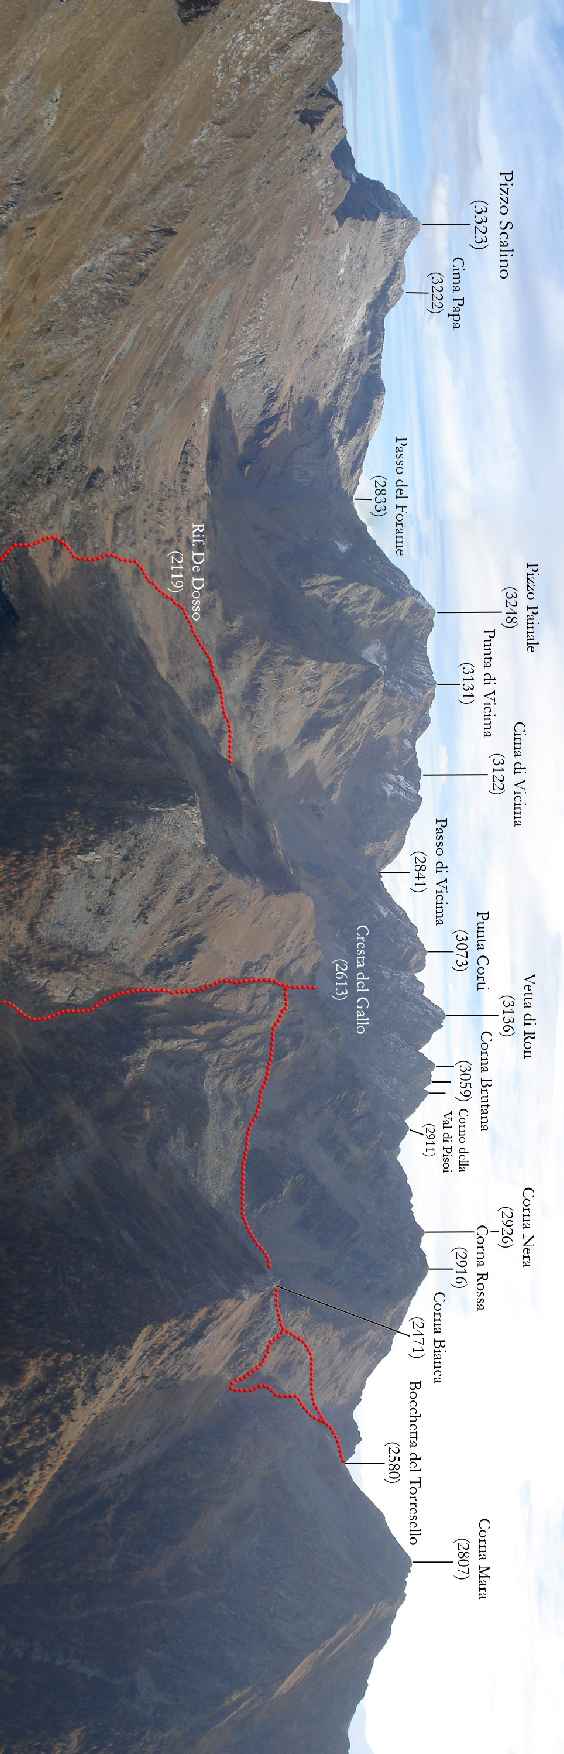 La Val di Togno e tracciati del gennaio